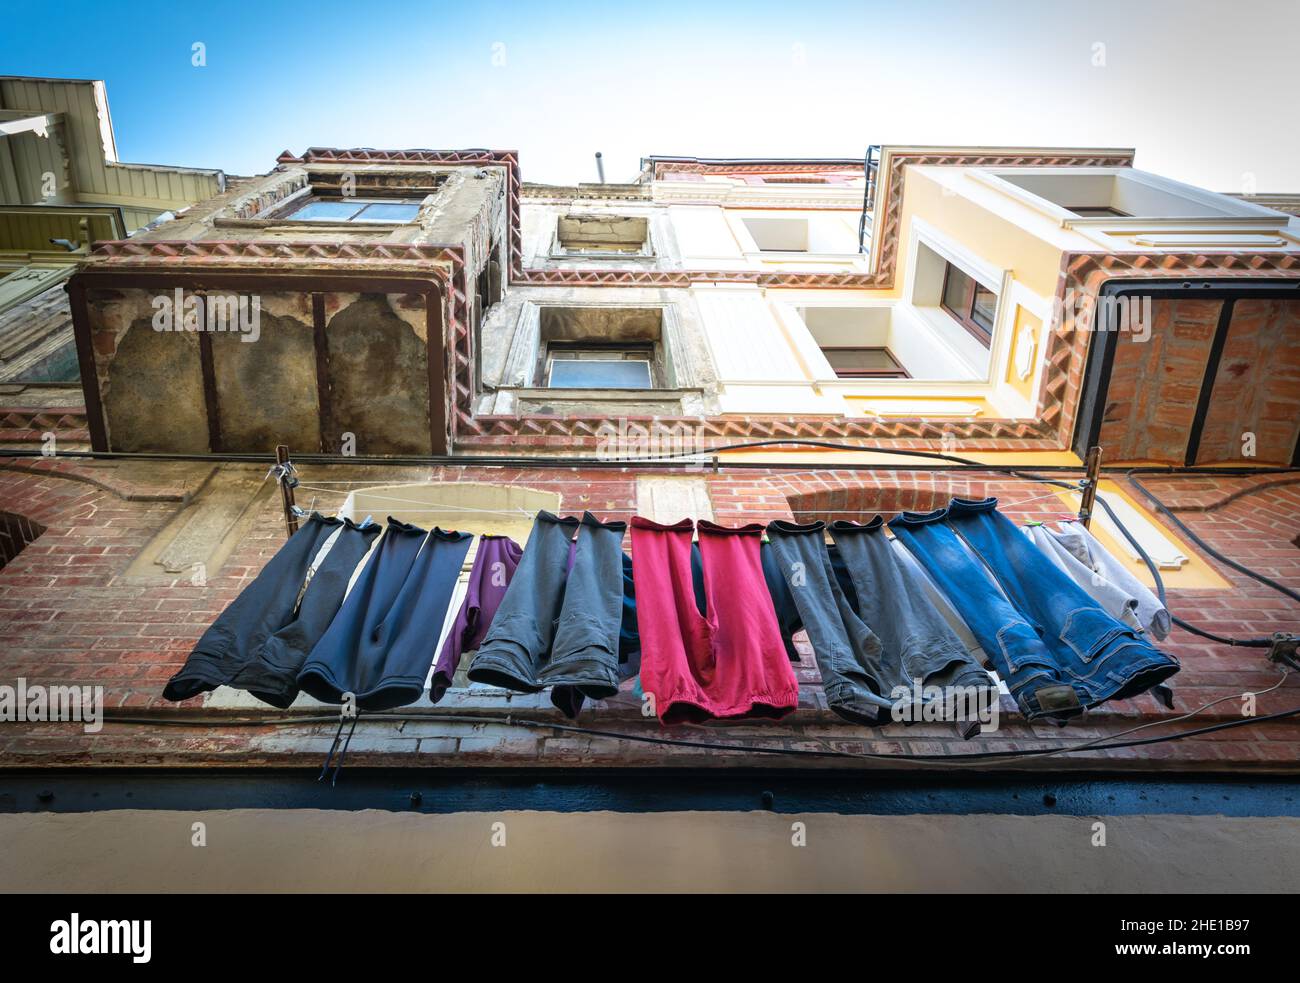 Vestiti appesi all'esterno e asciugando nella strada di Balat. Cultura turca e vivere in luoghi storici. istanbul.Turkey. Foto Stock